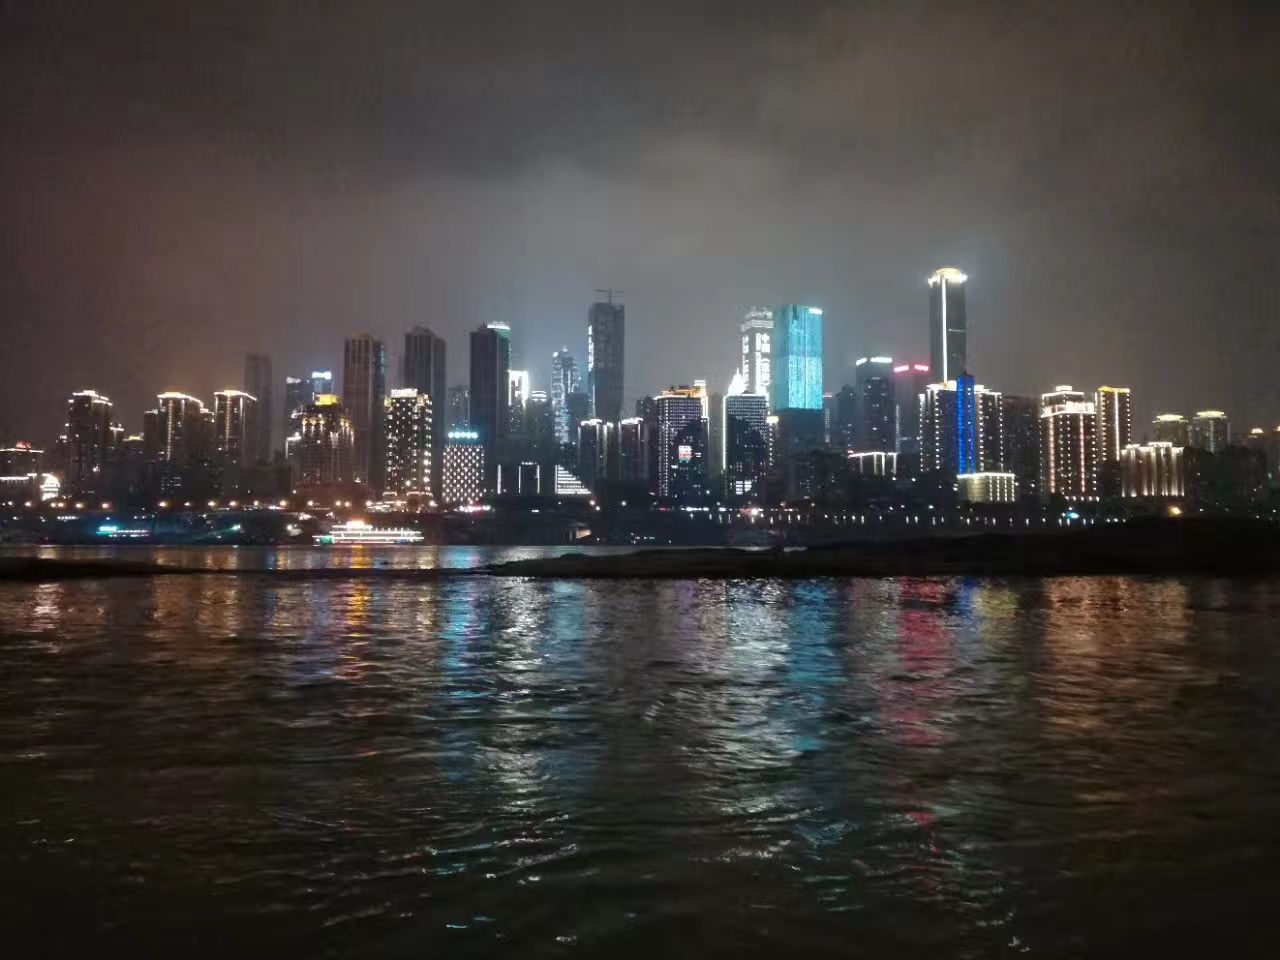 重庆市南滨路风景区 南滨之夜4k风景壁纸_4K风景图片高清壁纸_墨鱼部落格